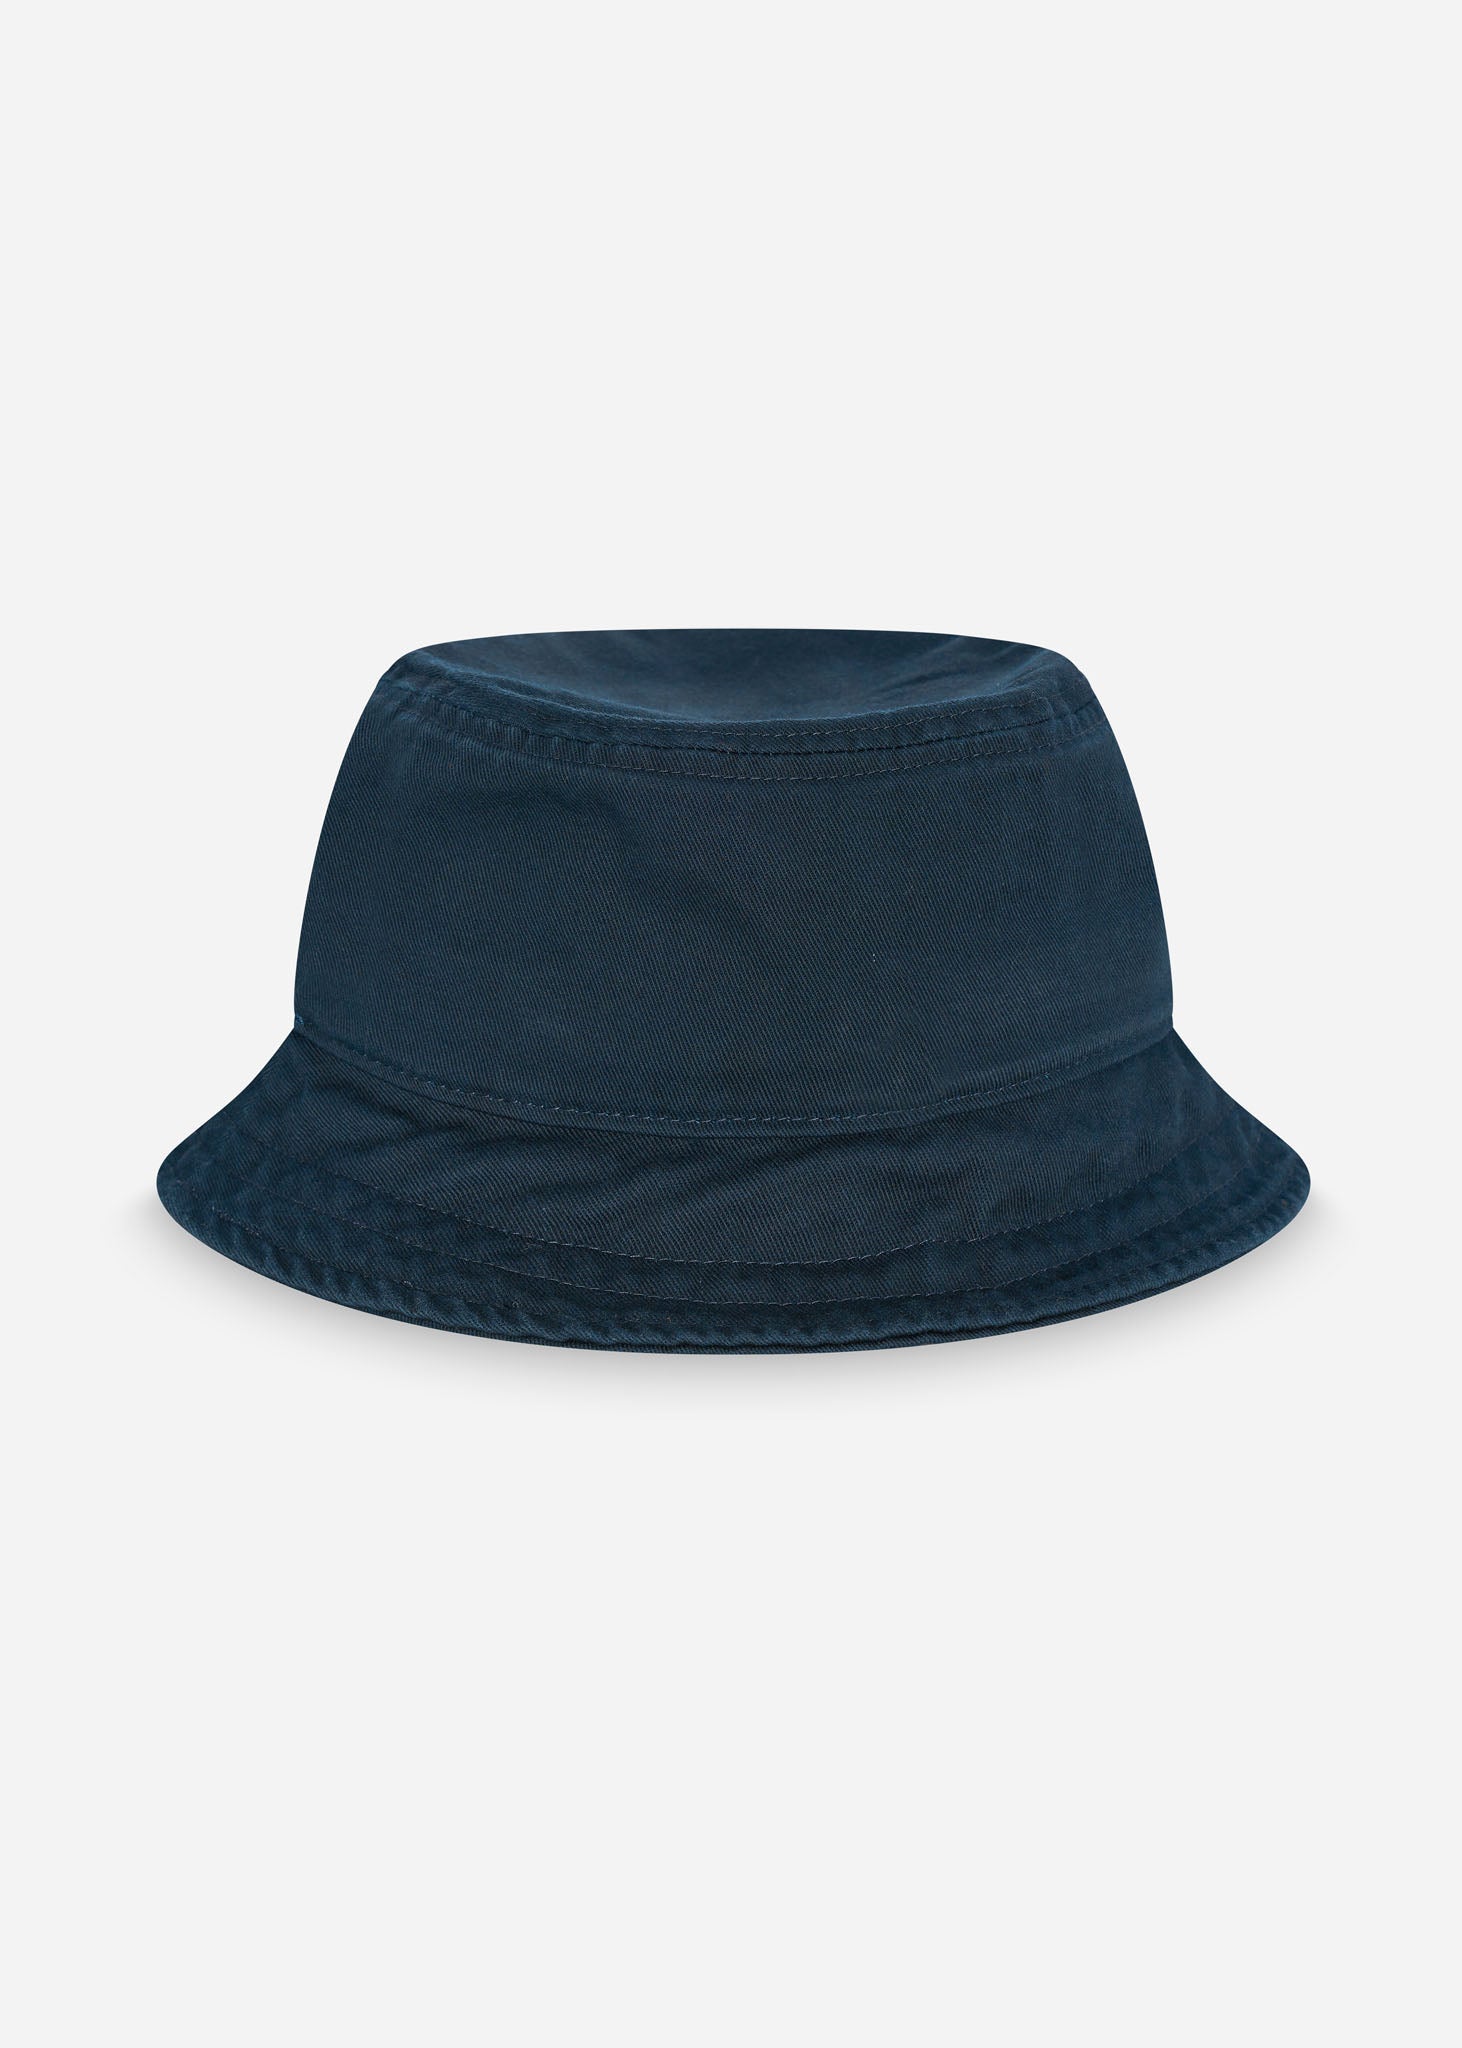 Lyle & Scott Bucket Hats  Cotton twill bucket hat  - dark navy 